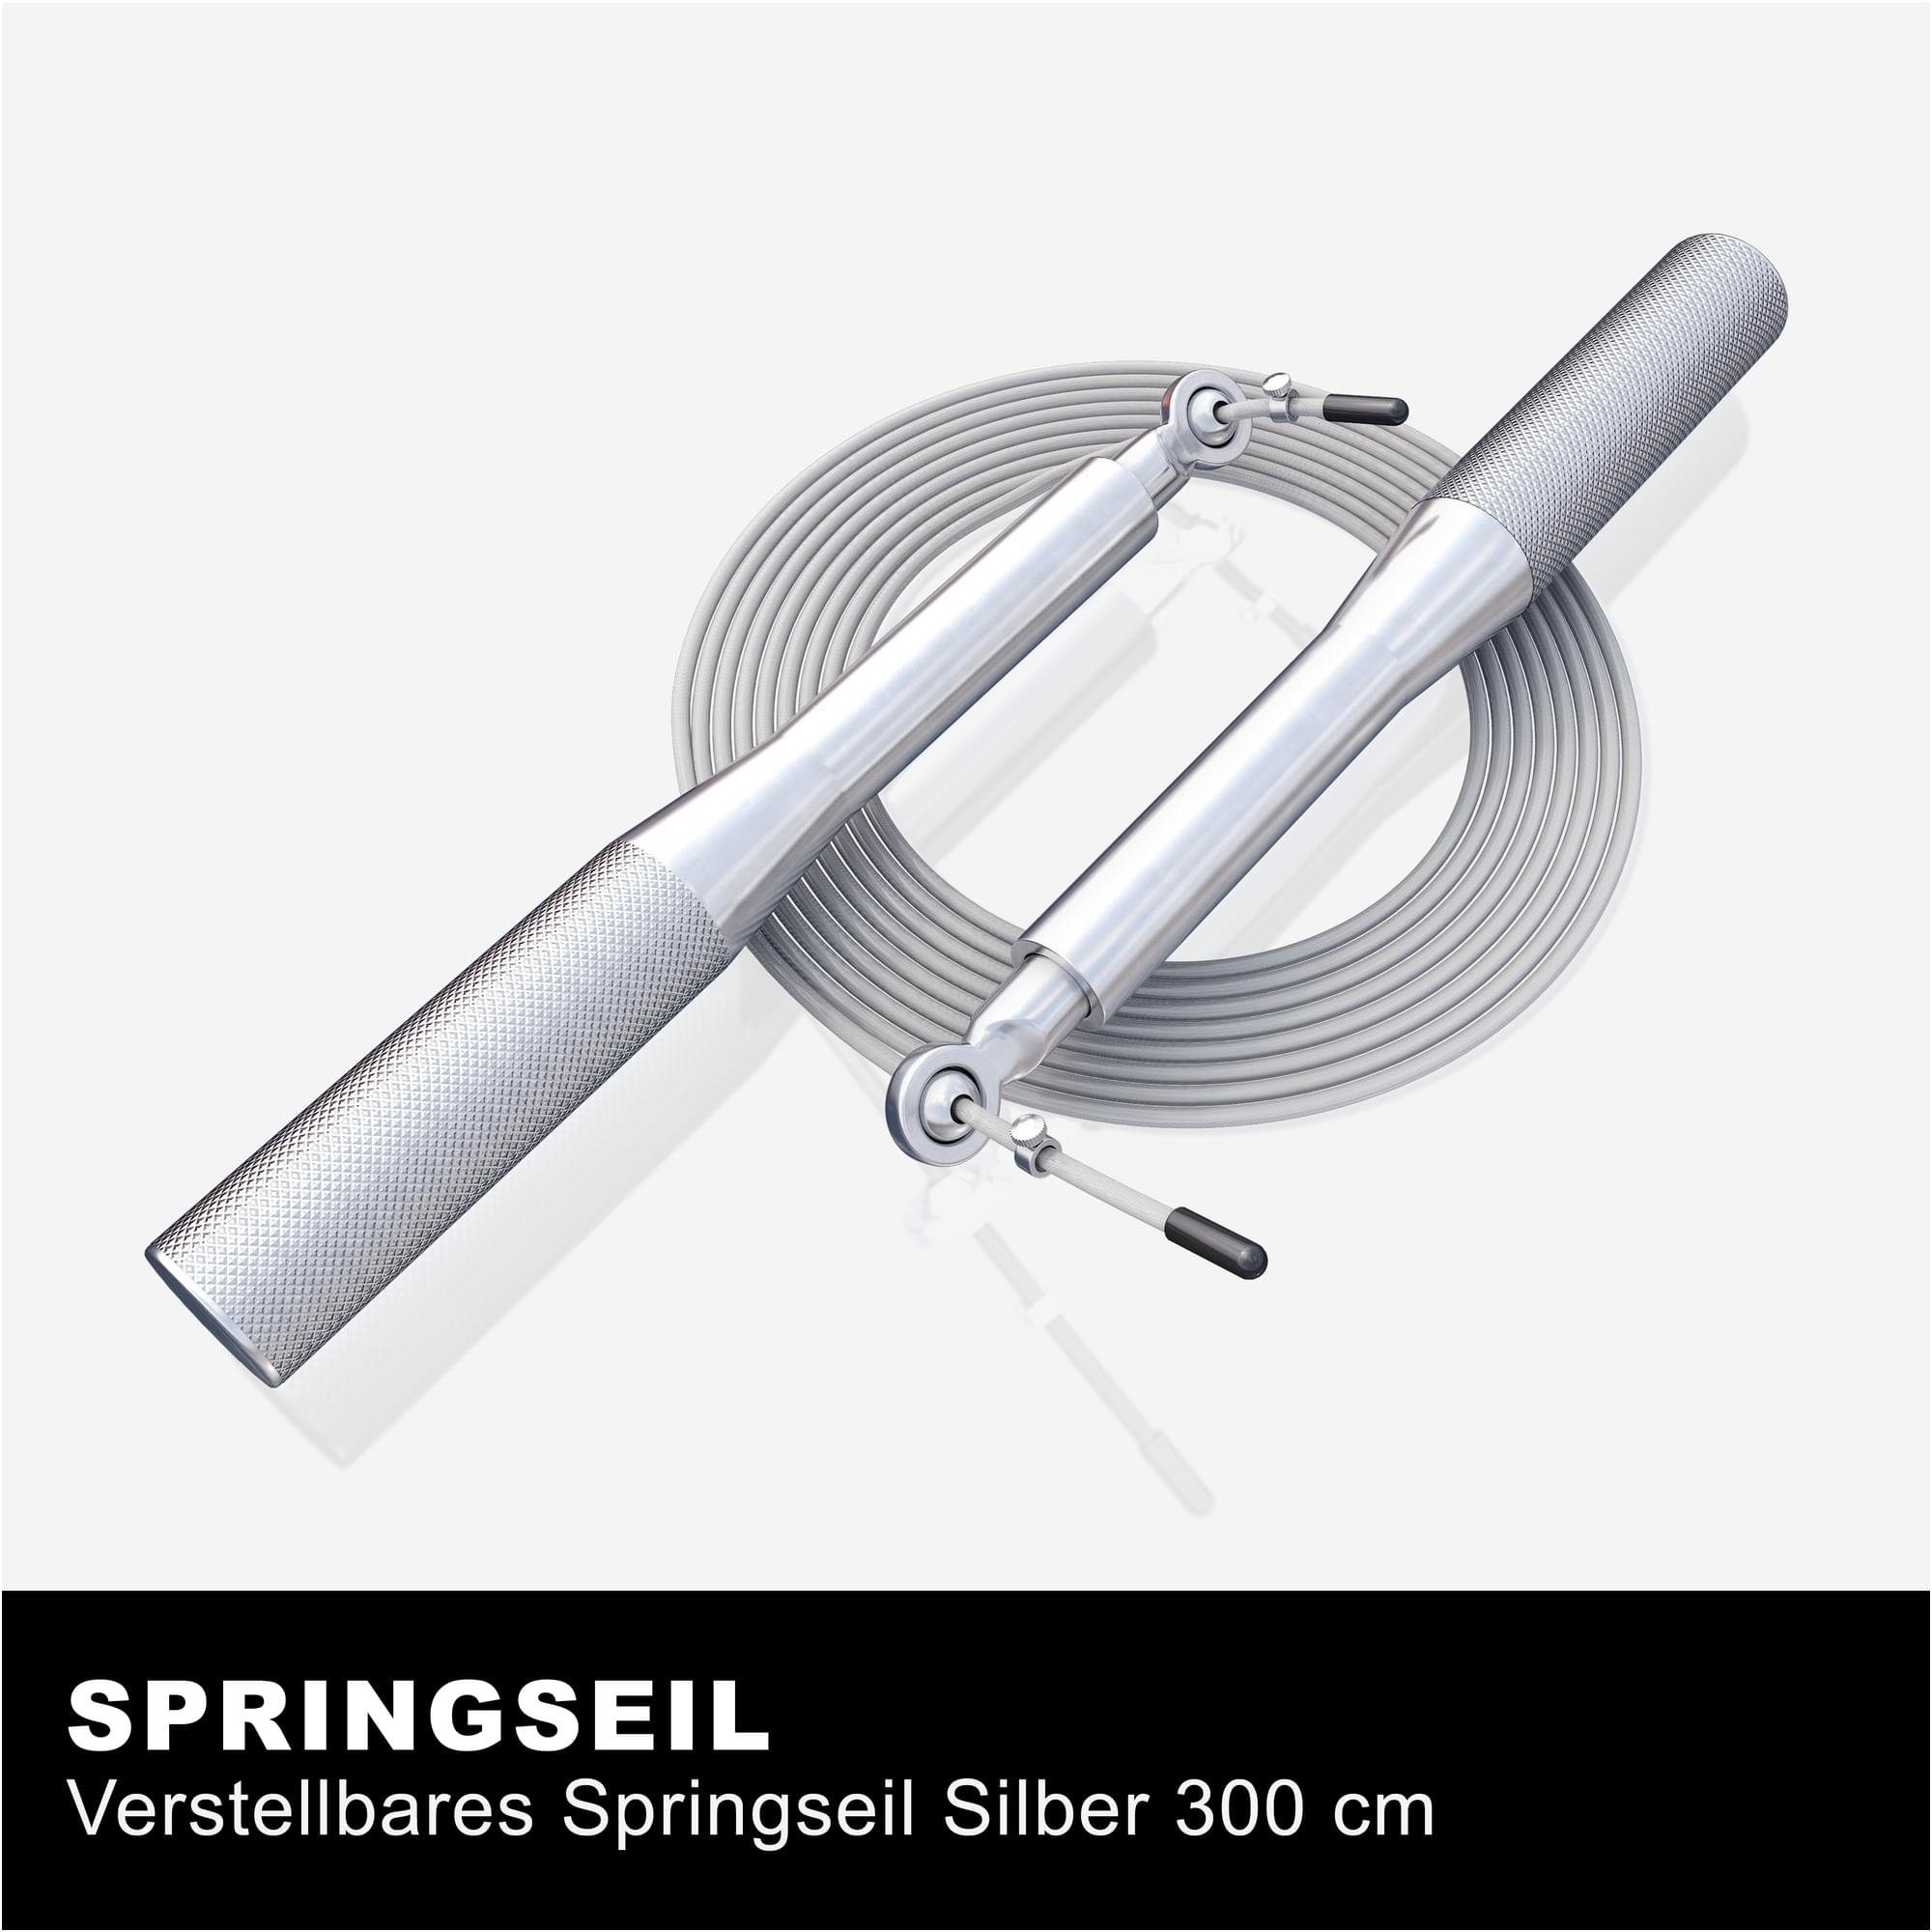 Verstellbar, - Jump, GORILLA Springseil Rope 3m, Rutschfeste - Sprungseil Silber Skipping, SPORTS Speed